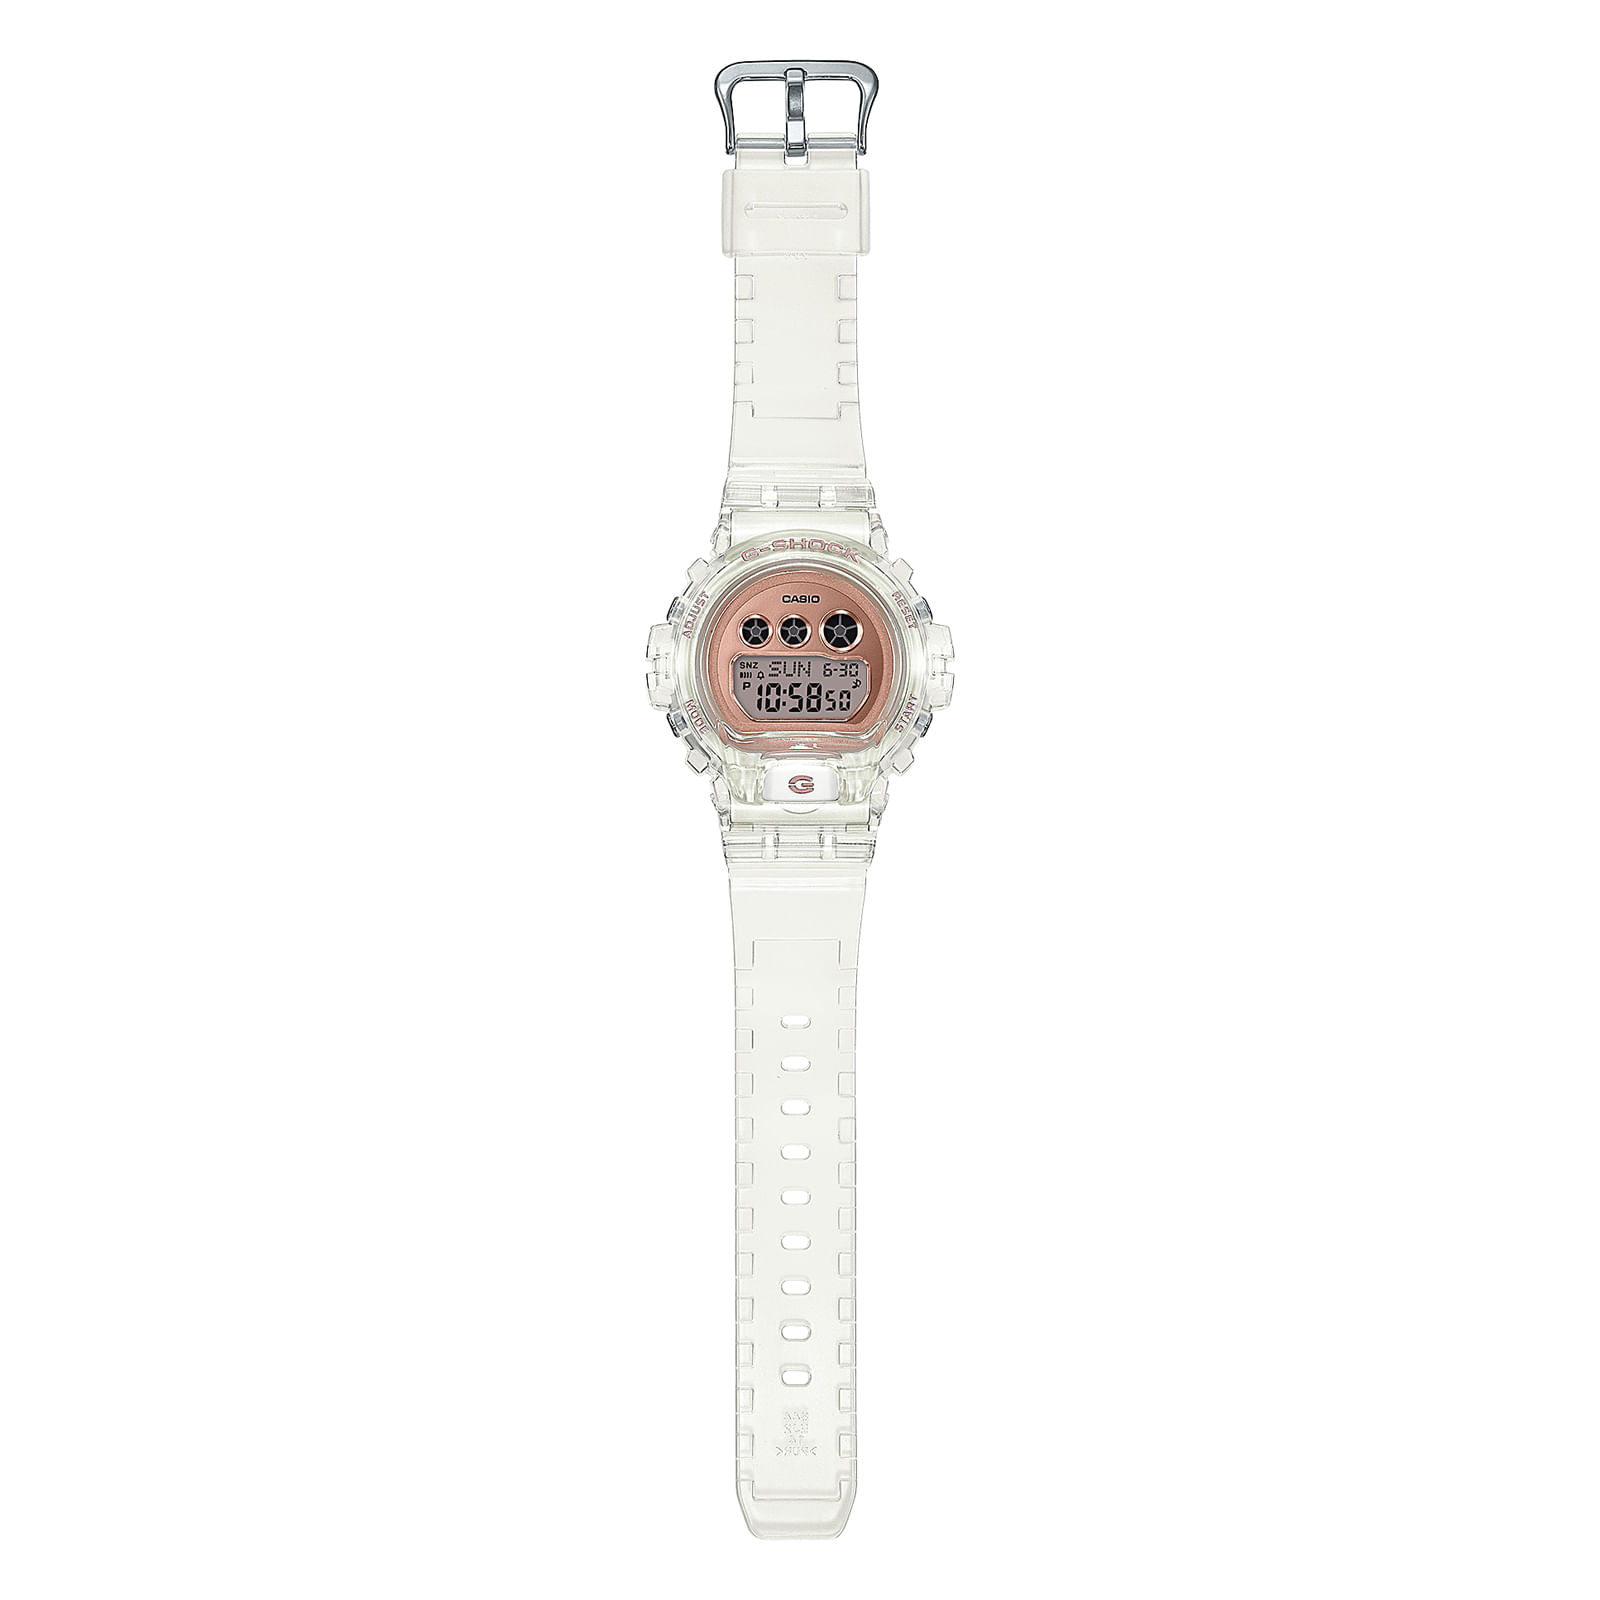 Reloj G-SHOCK GMD-S6900SR-7D Resina Mujer Blanco